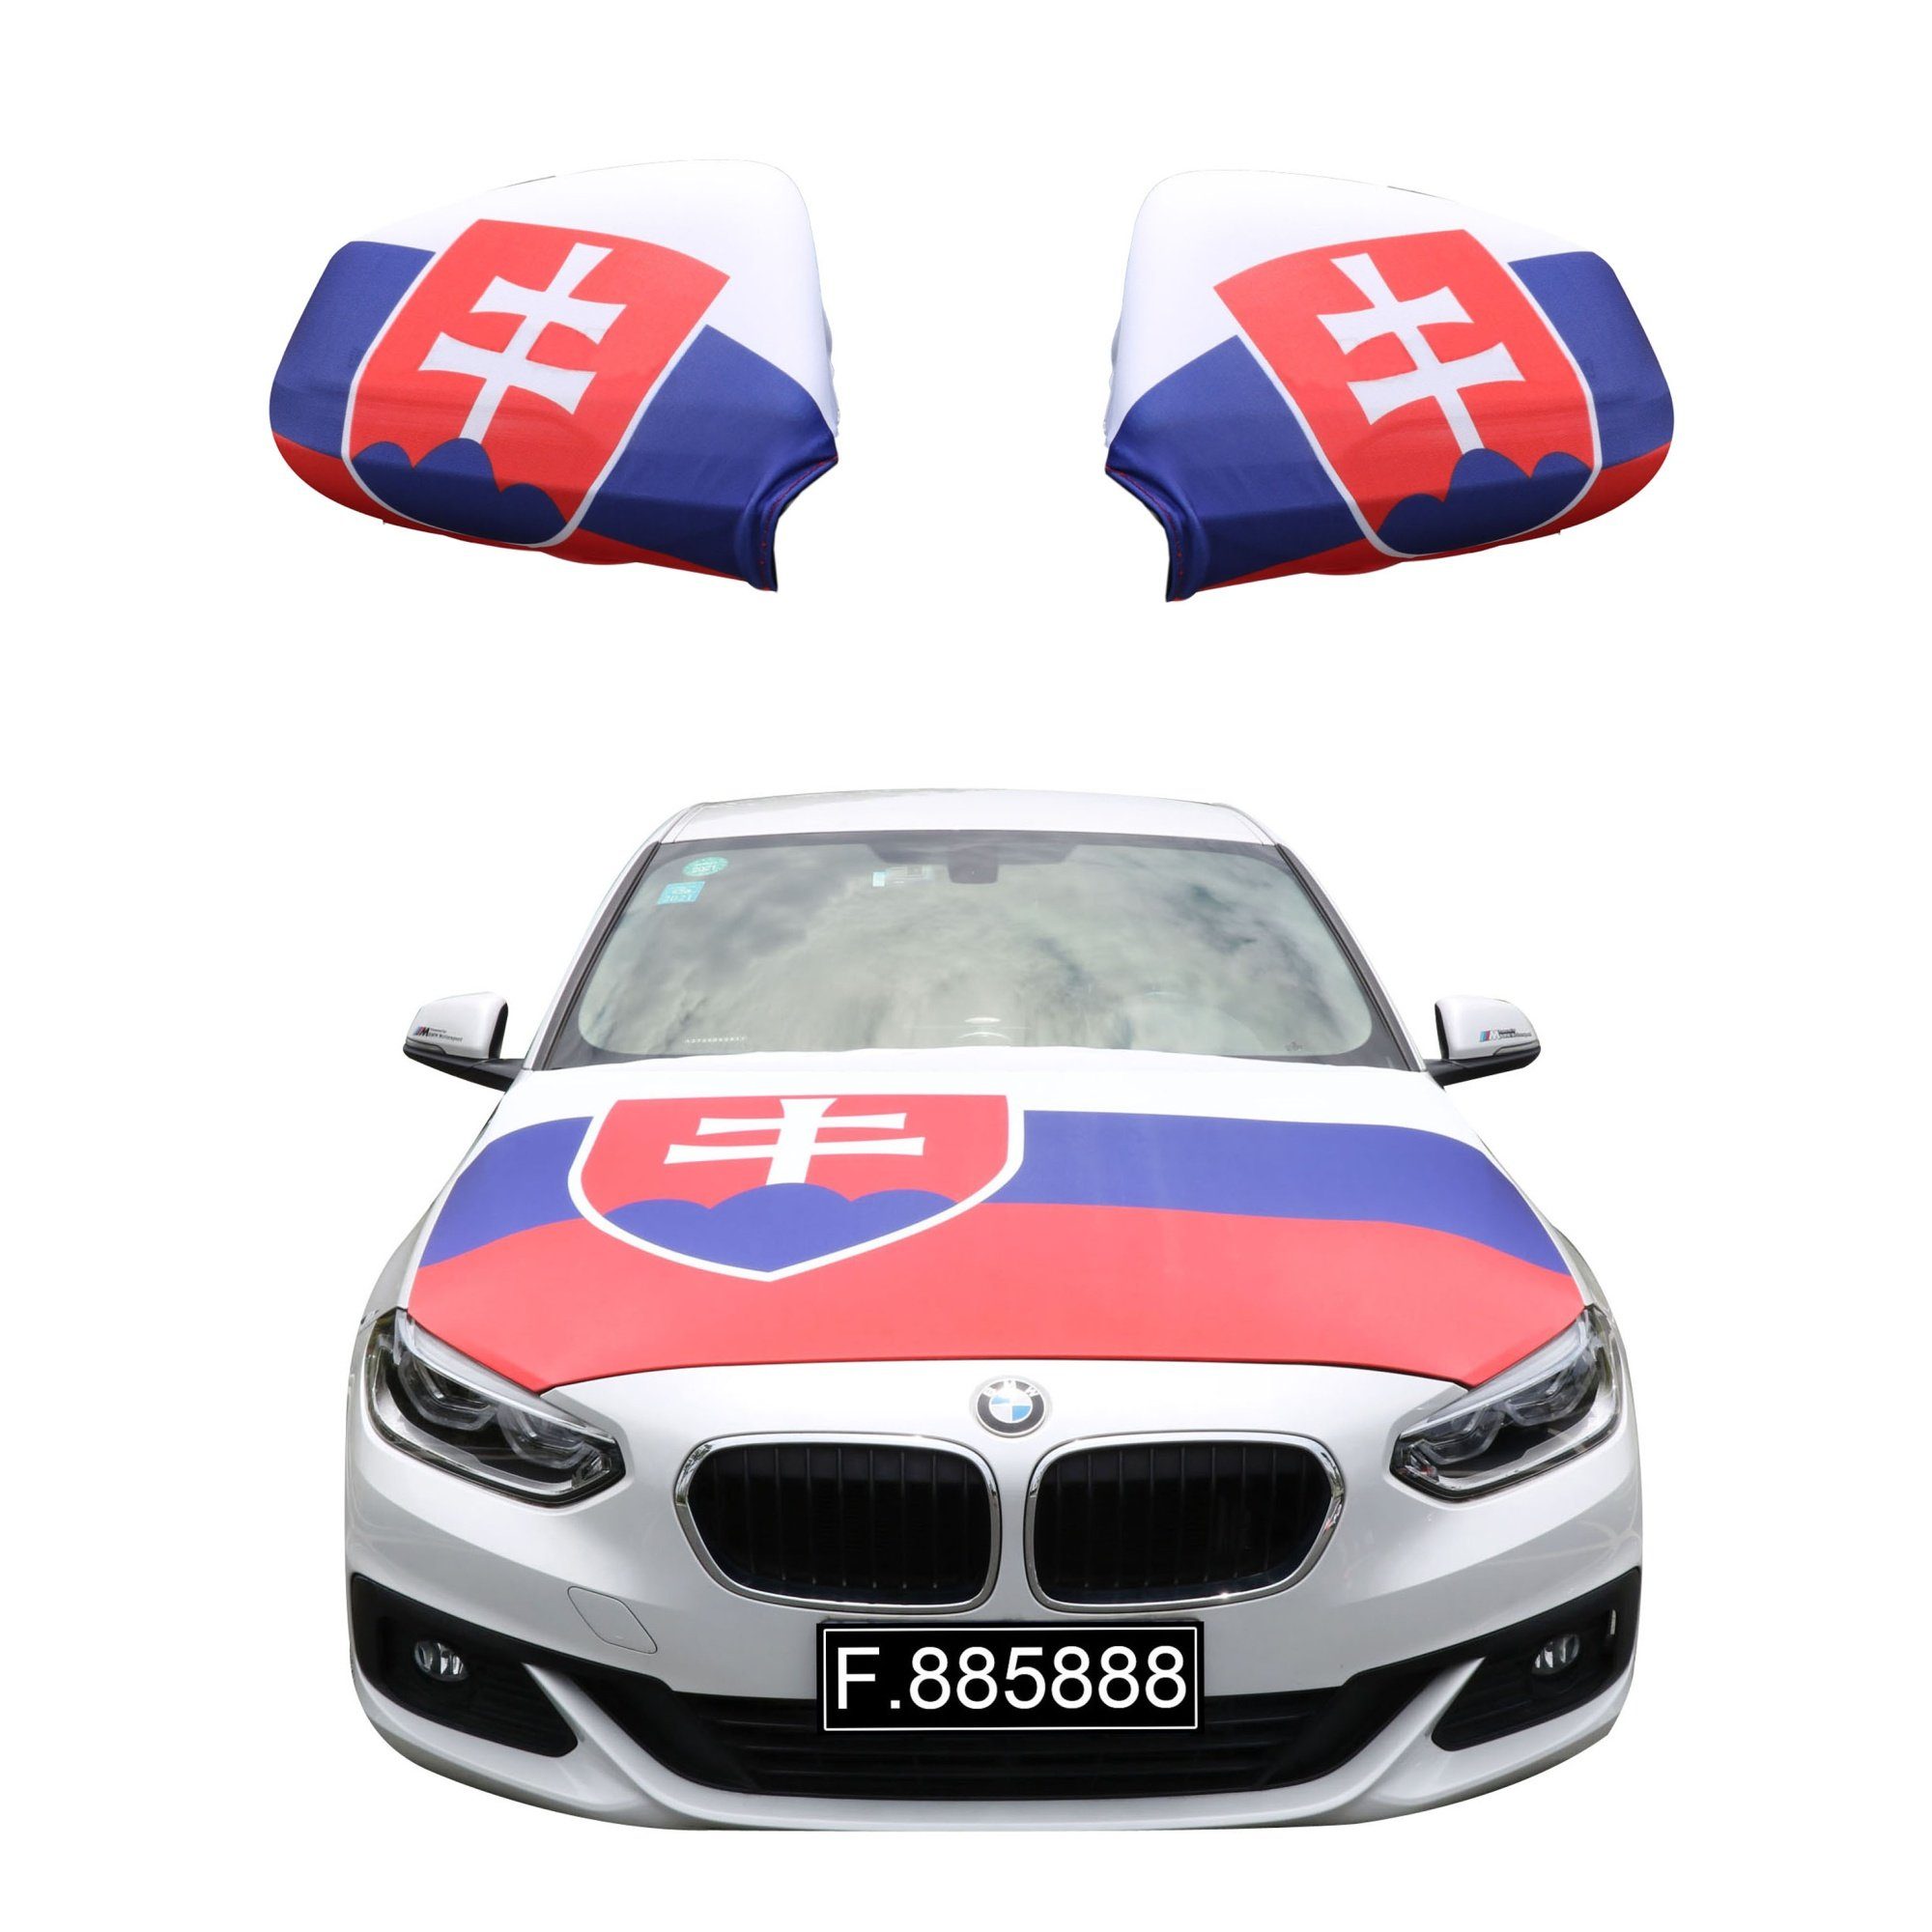 Sonia Originelli Fahne Fanset "Slowakei" Slovakia Fußball Motorhaube Außenspiegel Flagge, für alle gängigen PKW Modelle, Motorhauben Flagge: ca. 115 x 150cm | Fanfahnen